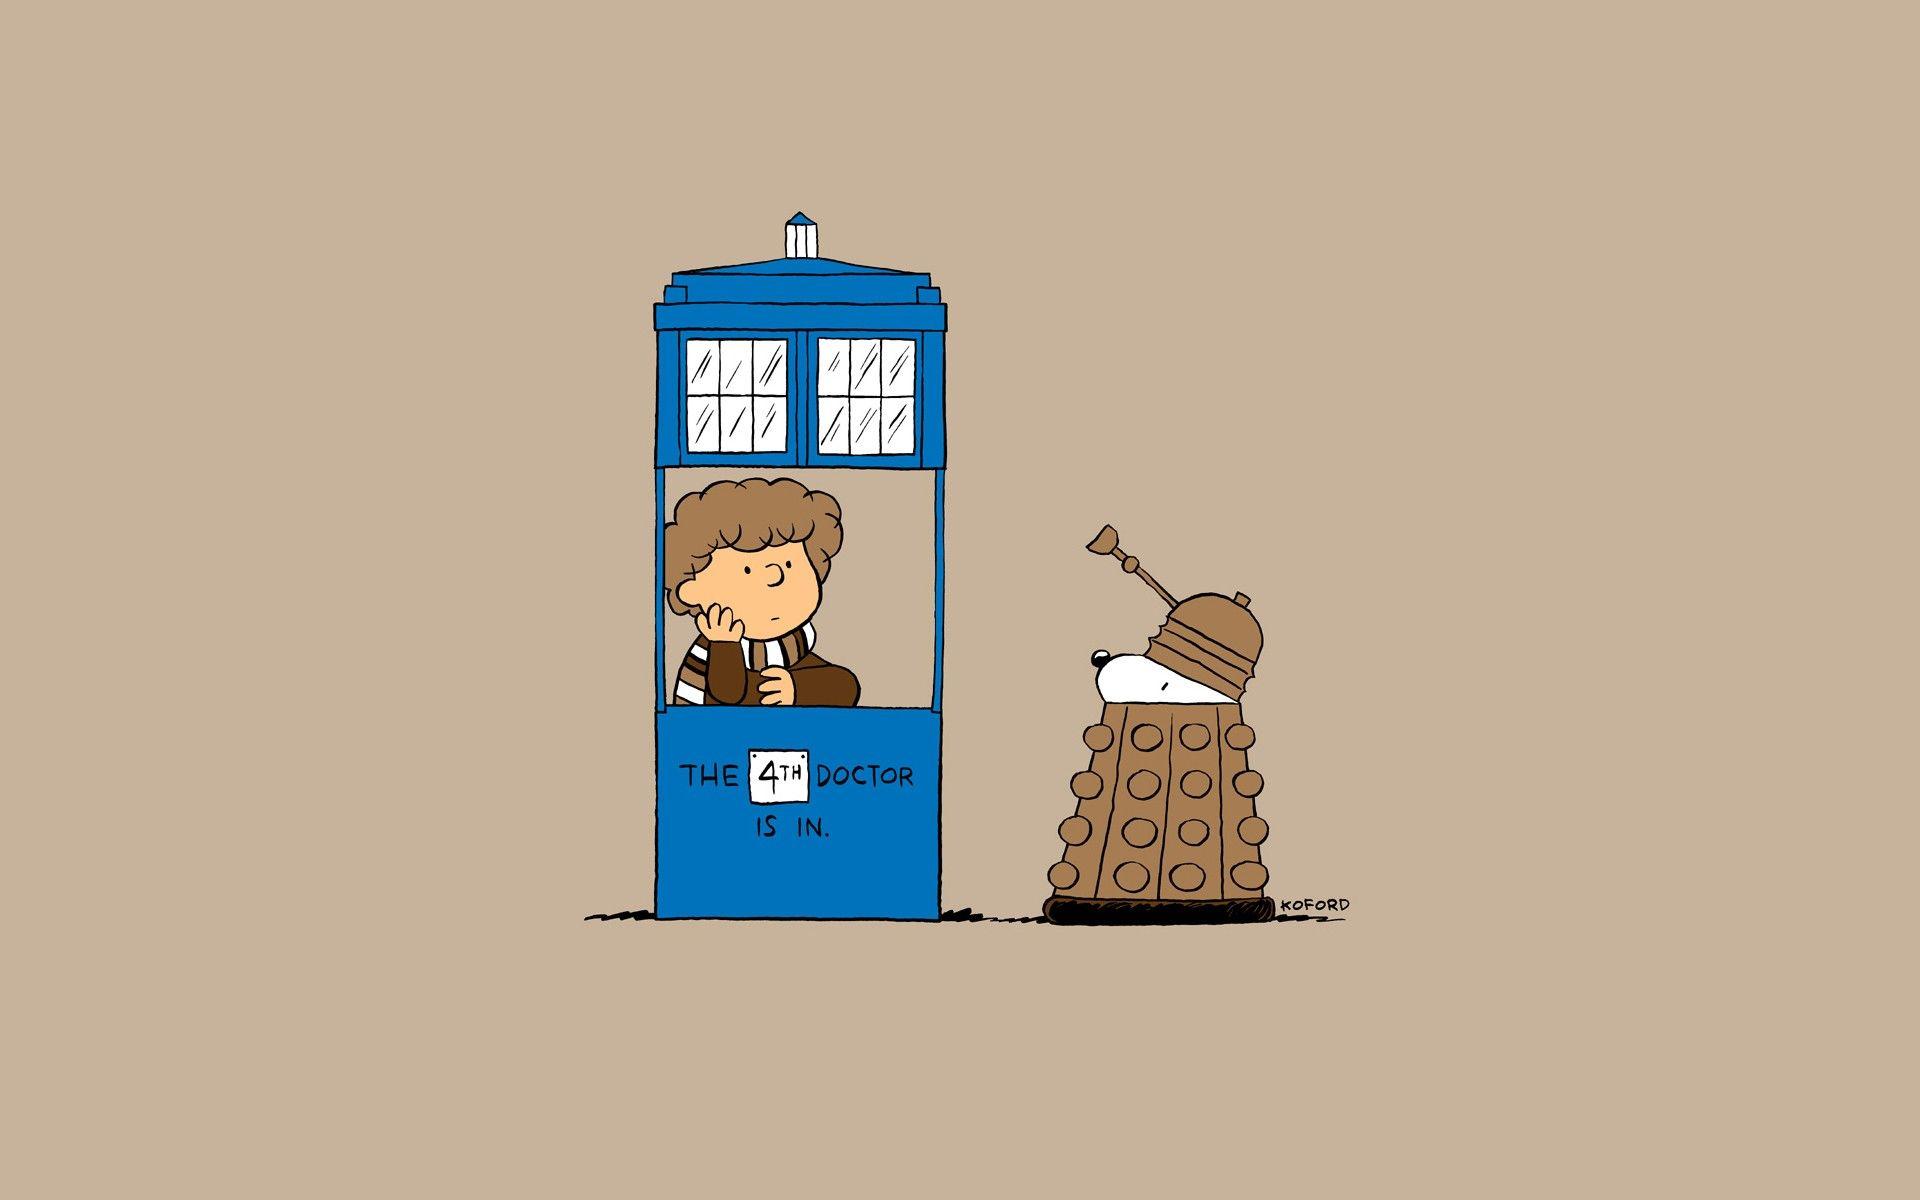 Wallpaper For > Doctor Who Wallpaper Dalek